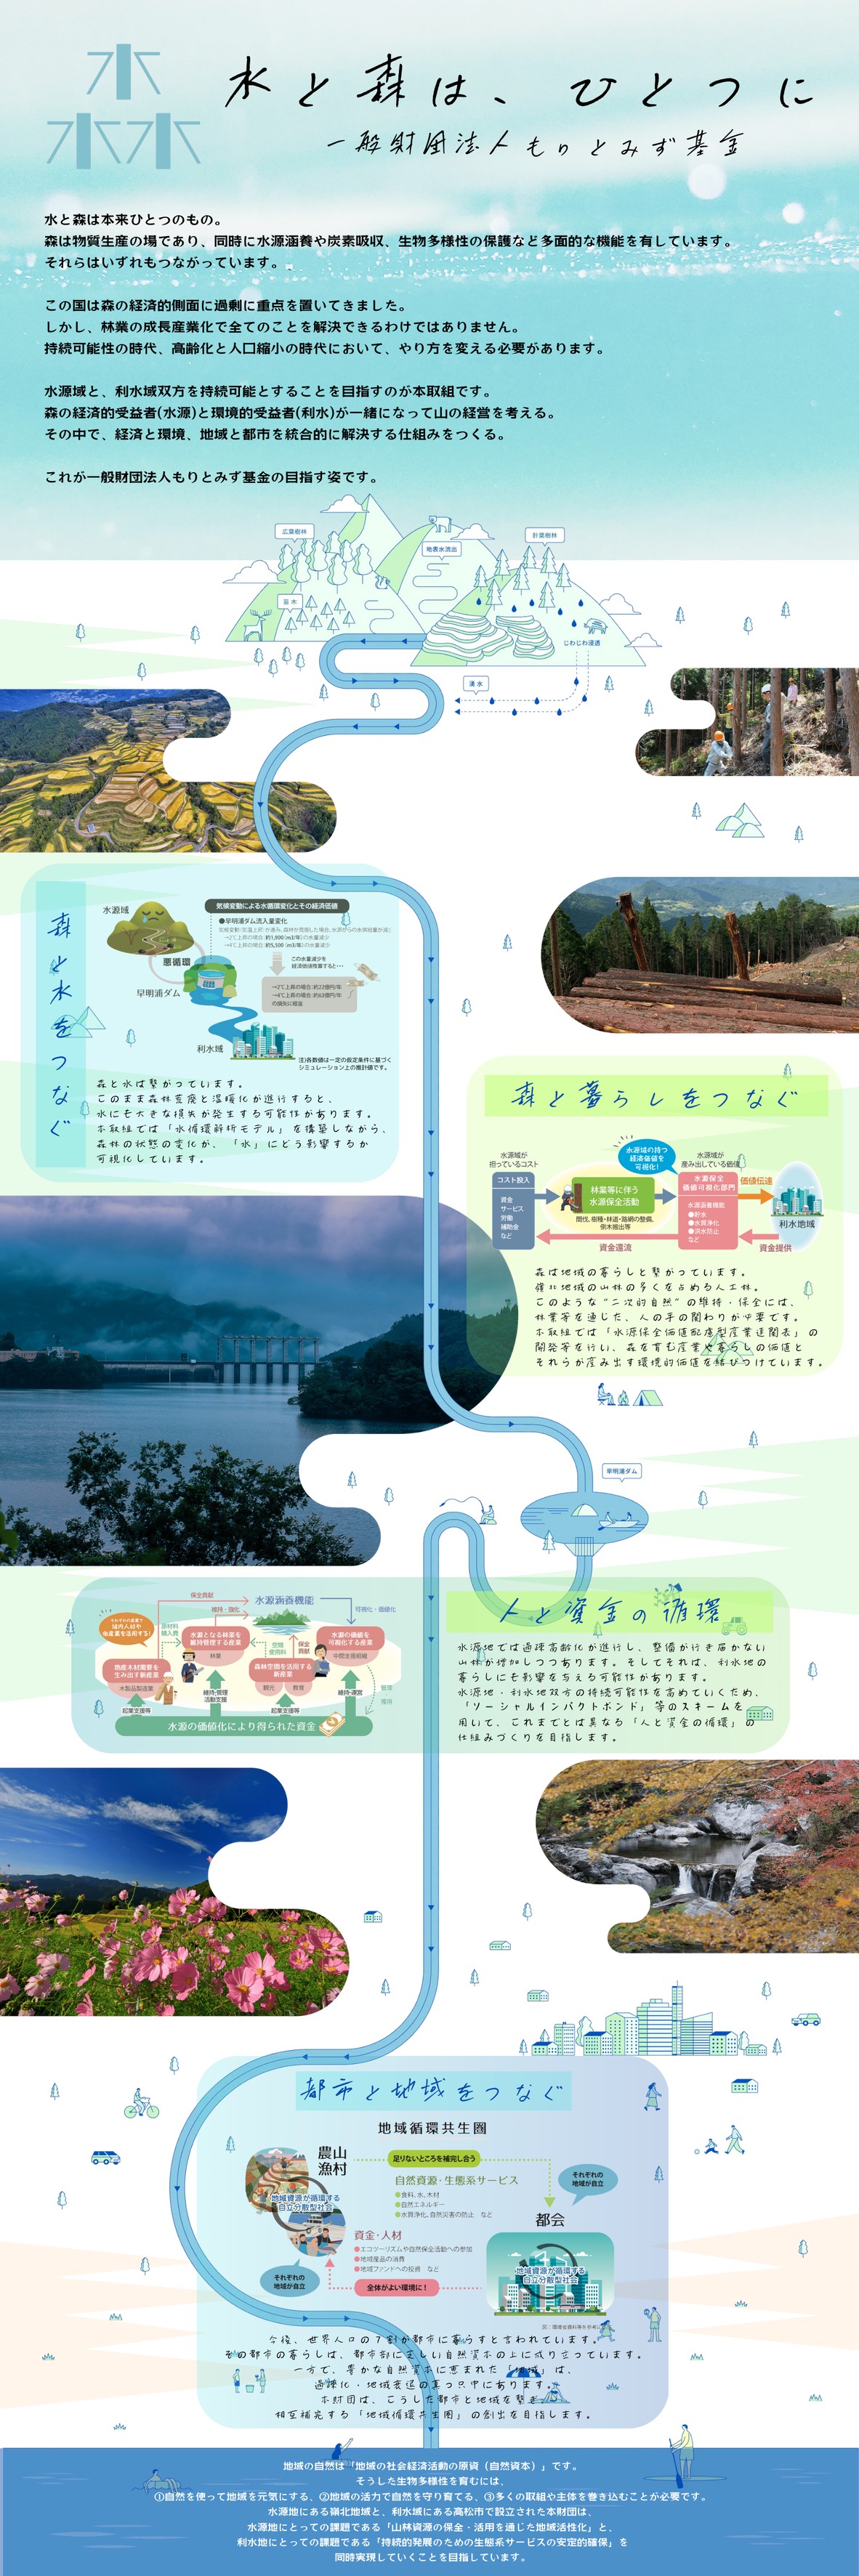 四国はひとつ。四国の森と水を守る基金『一般財団法人もりとみず基金』 - Forest and Water Foundation of Shikoku